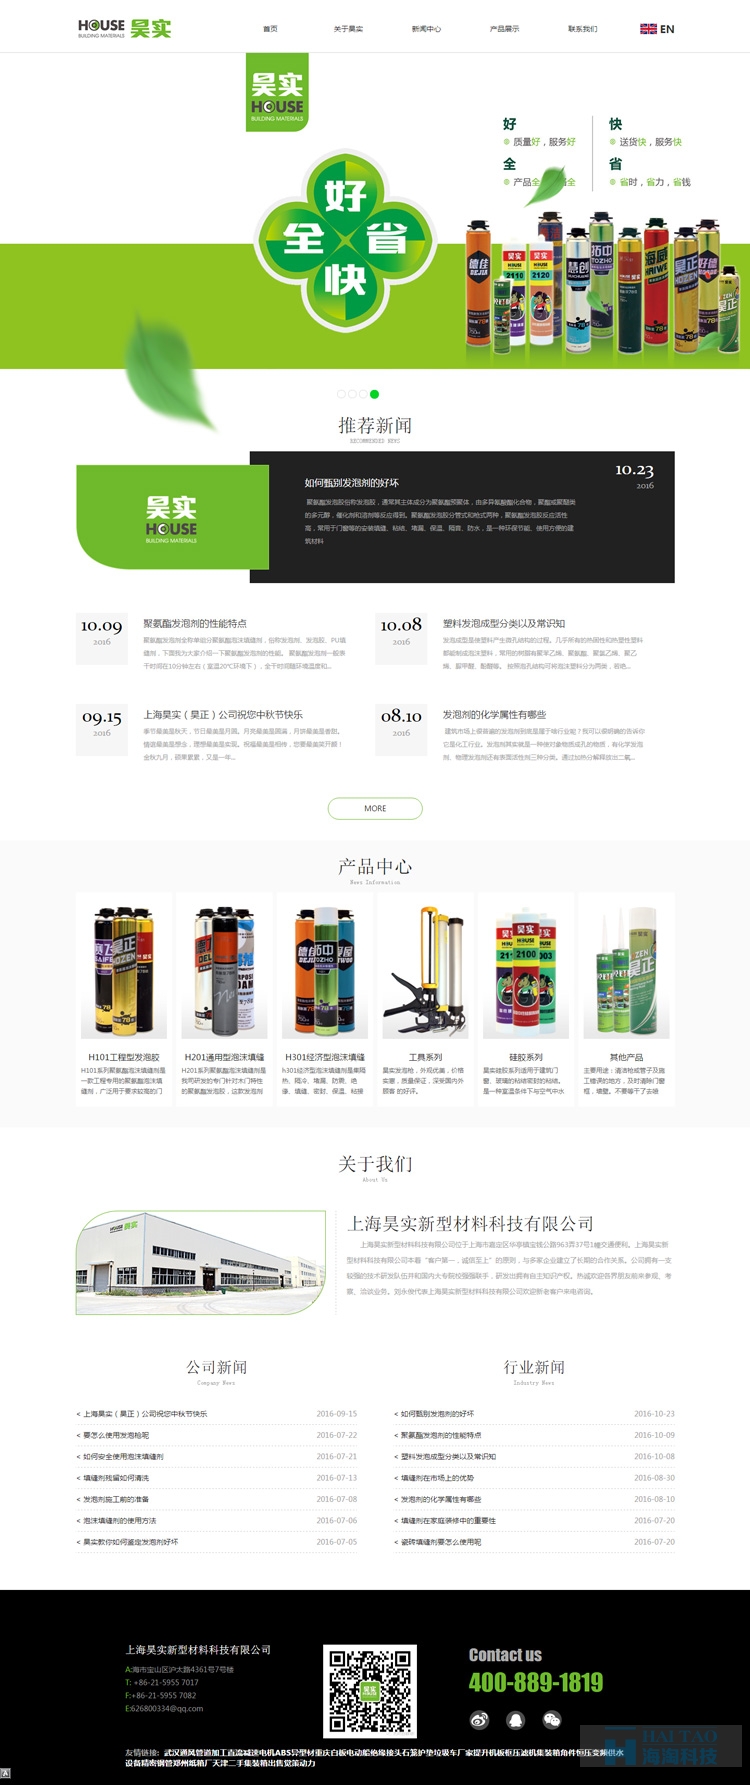 昊实新型材料网站设计,上海自适应网站设计案例,网页响应式设计